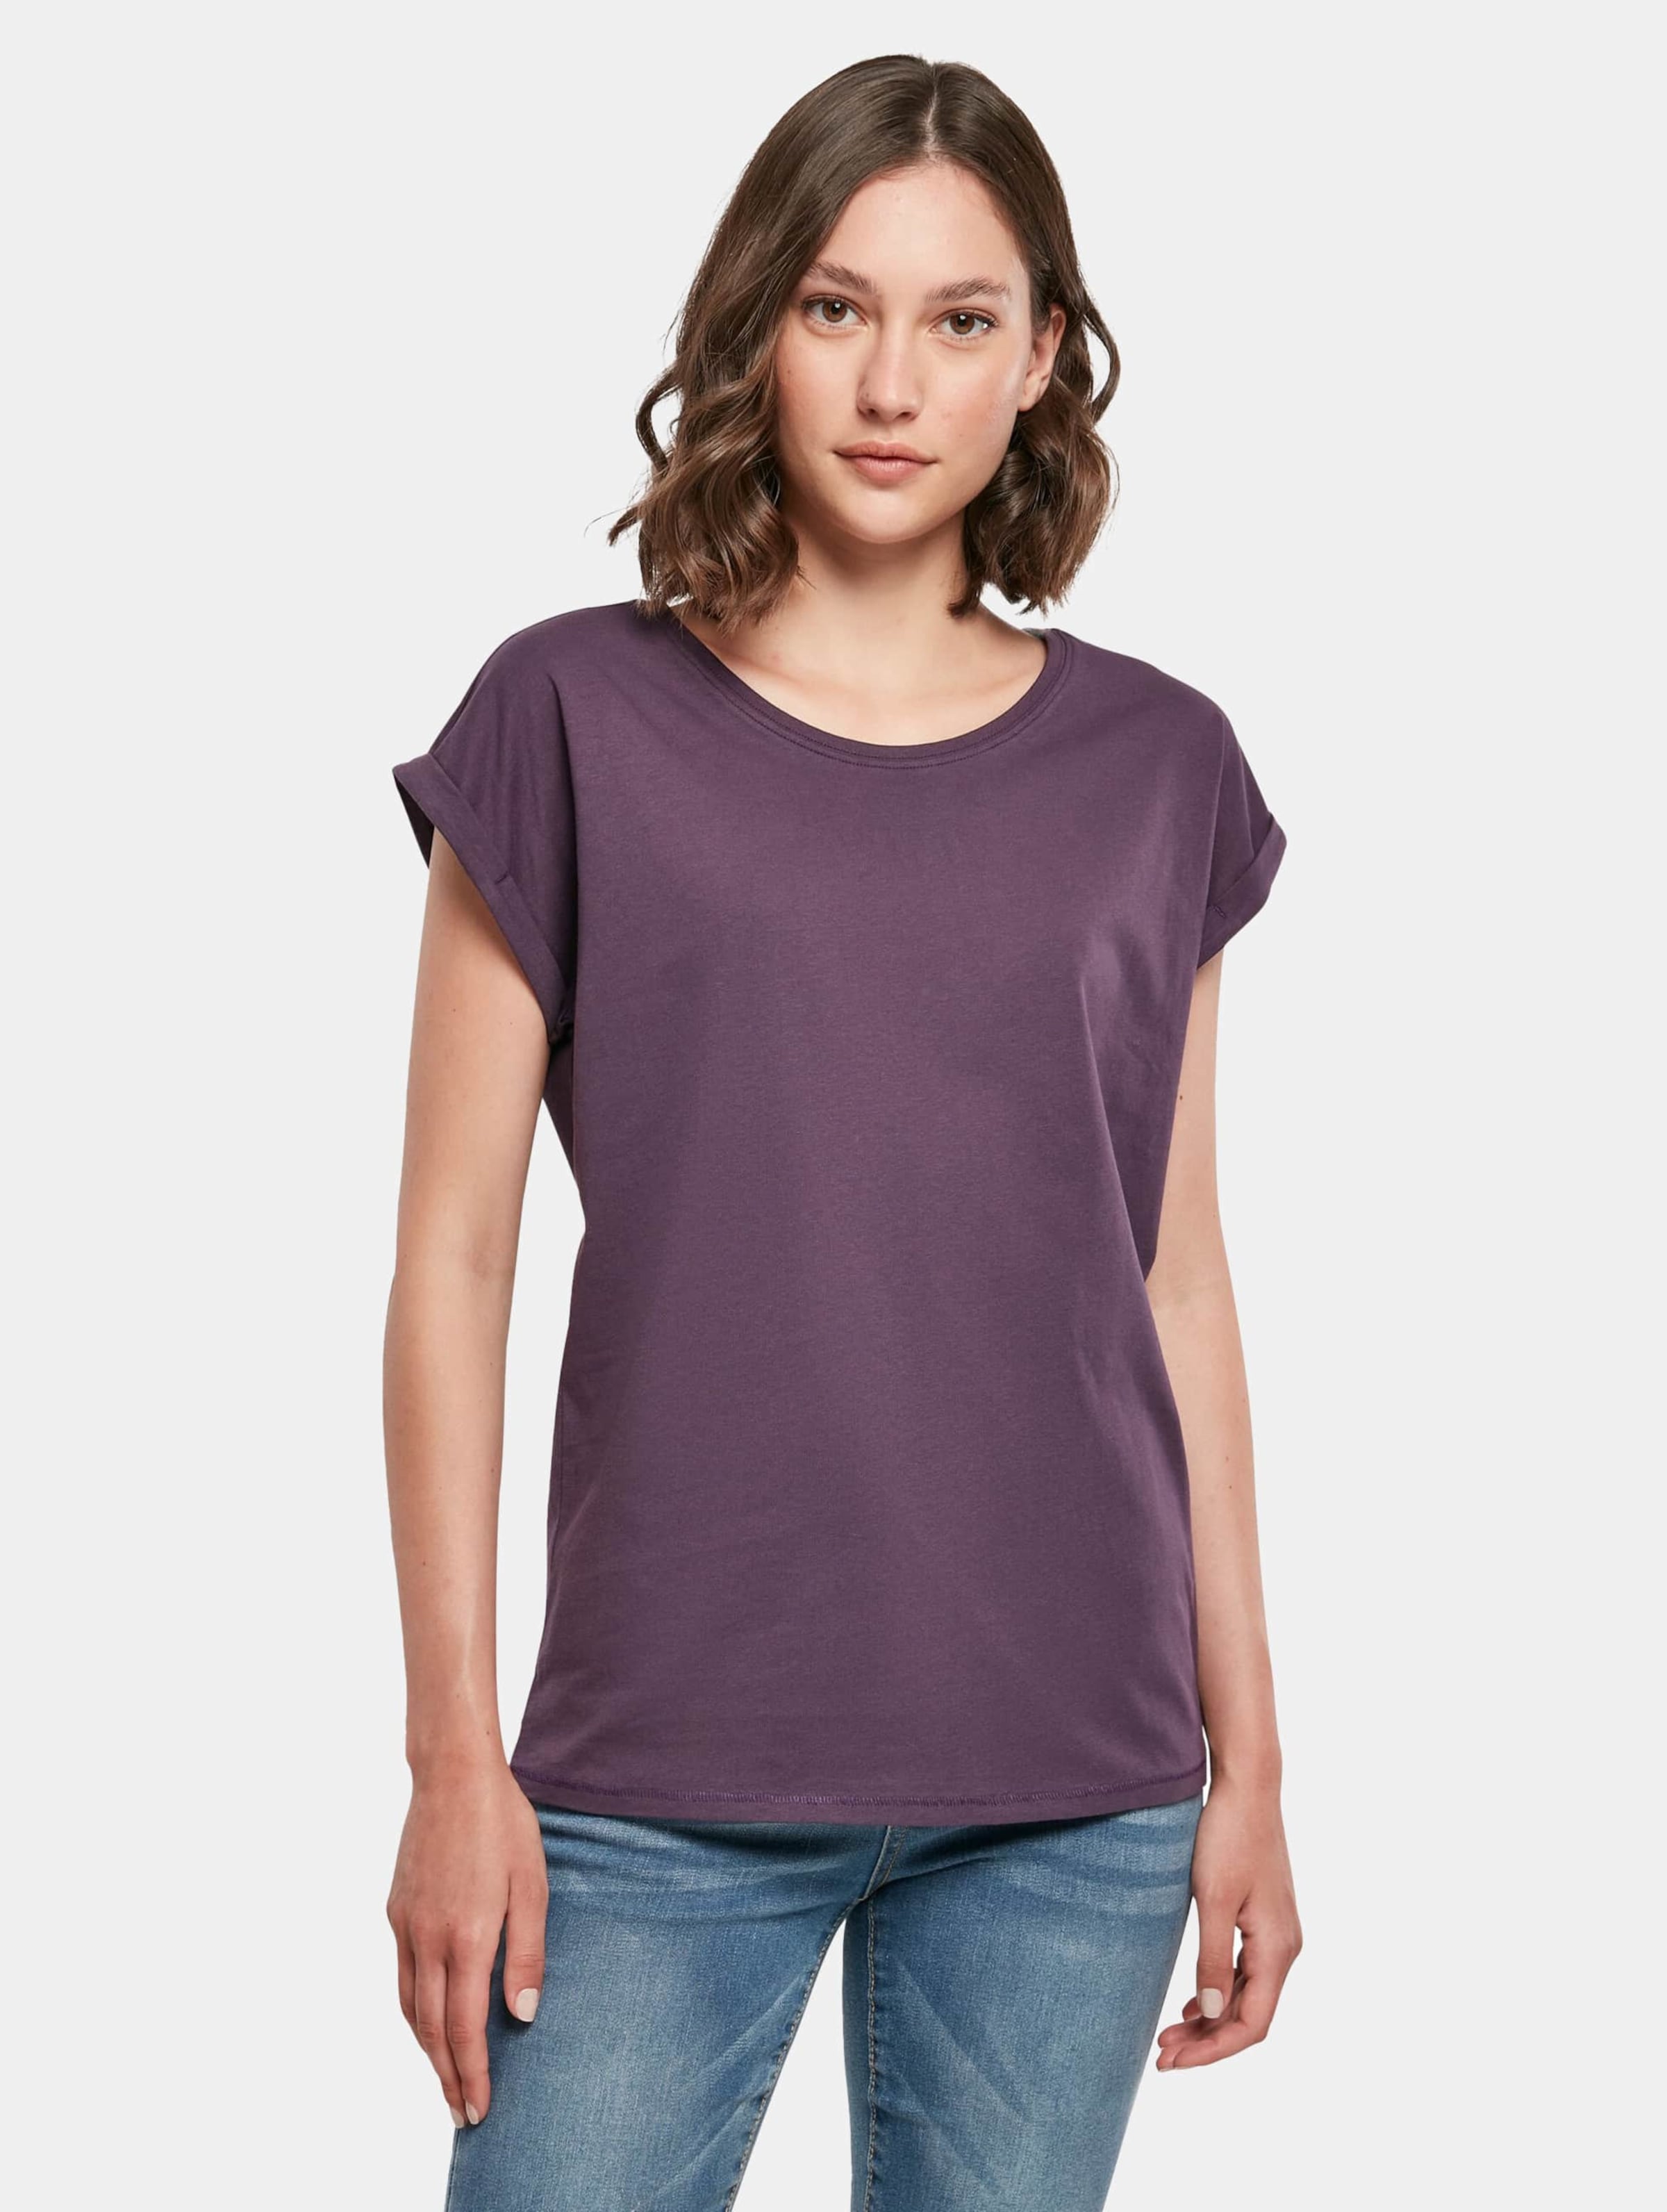 Damesshirt met ronde hals en omgeslagen mouw Purple Night - XL